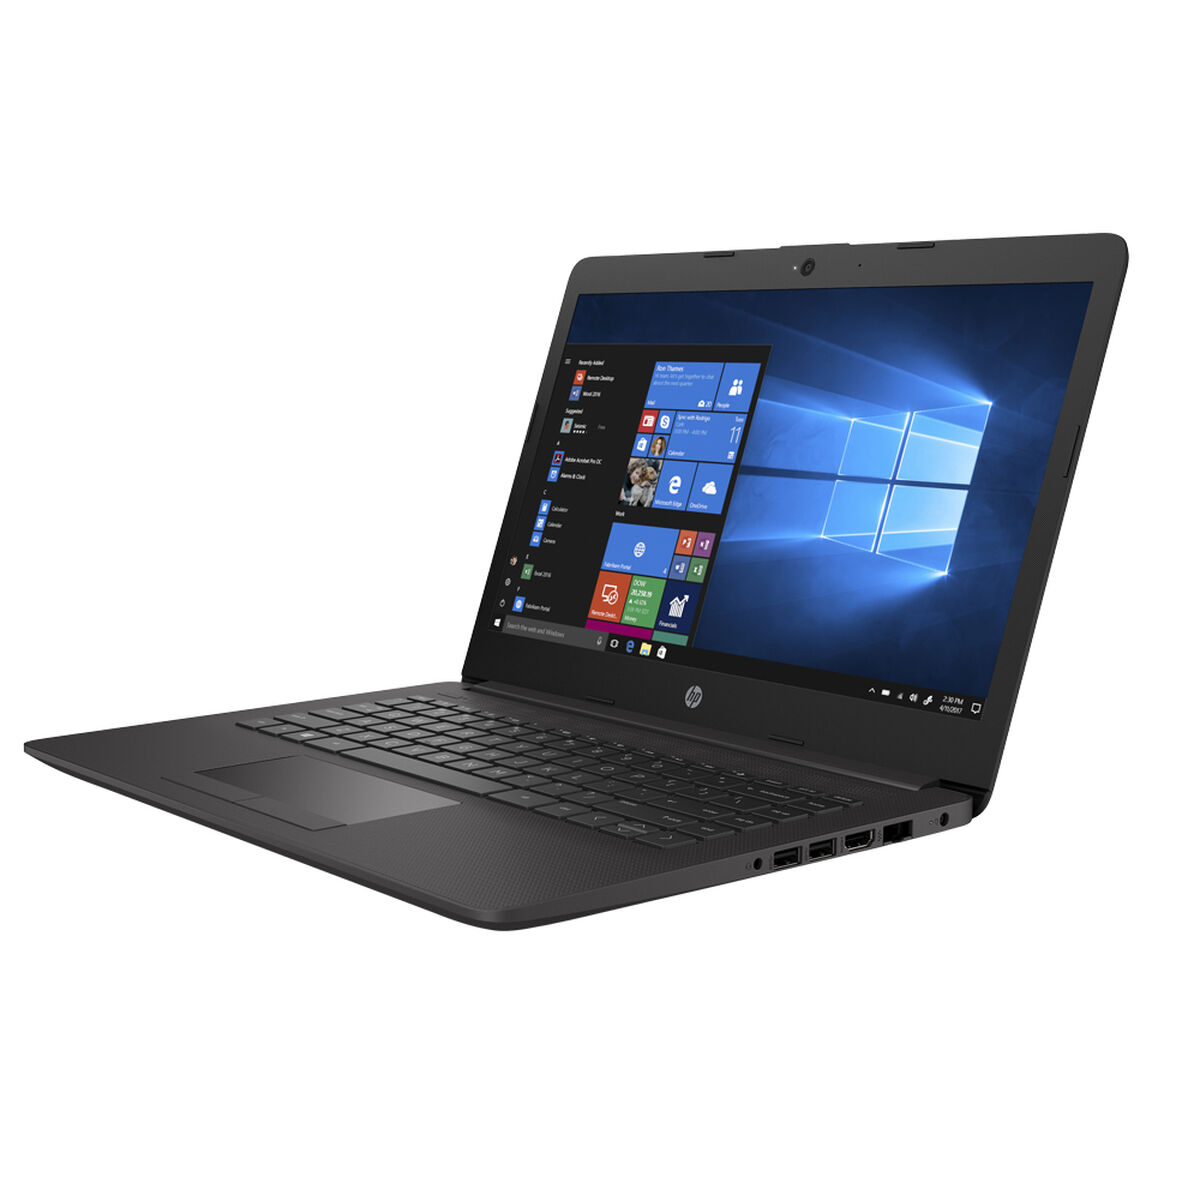 Notebook HP 240 G7 Core i5 4GB 1TB 14"